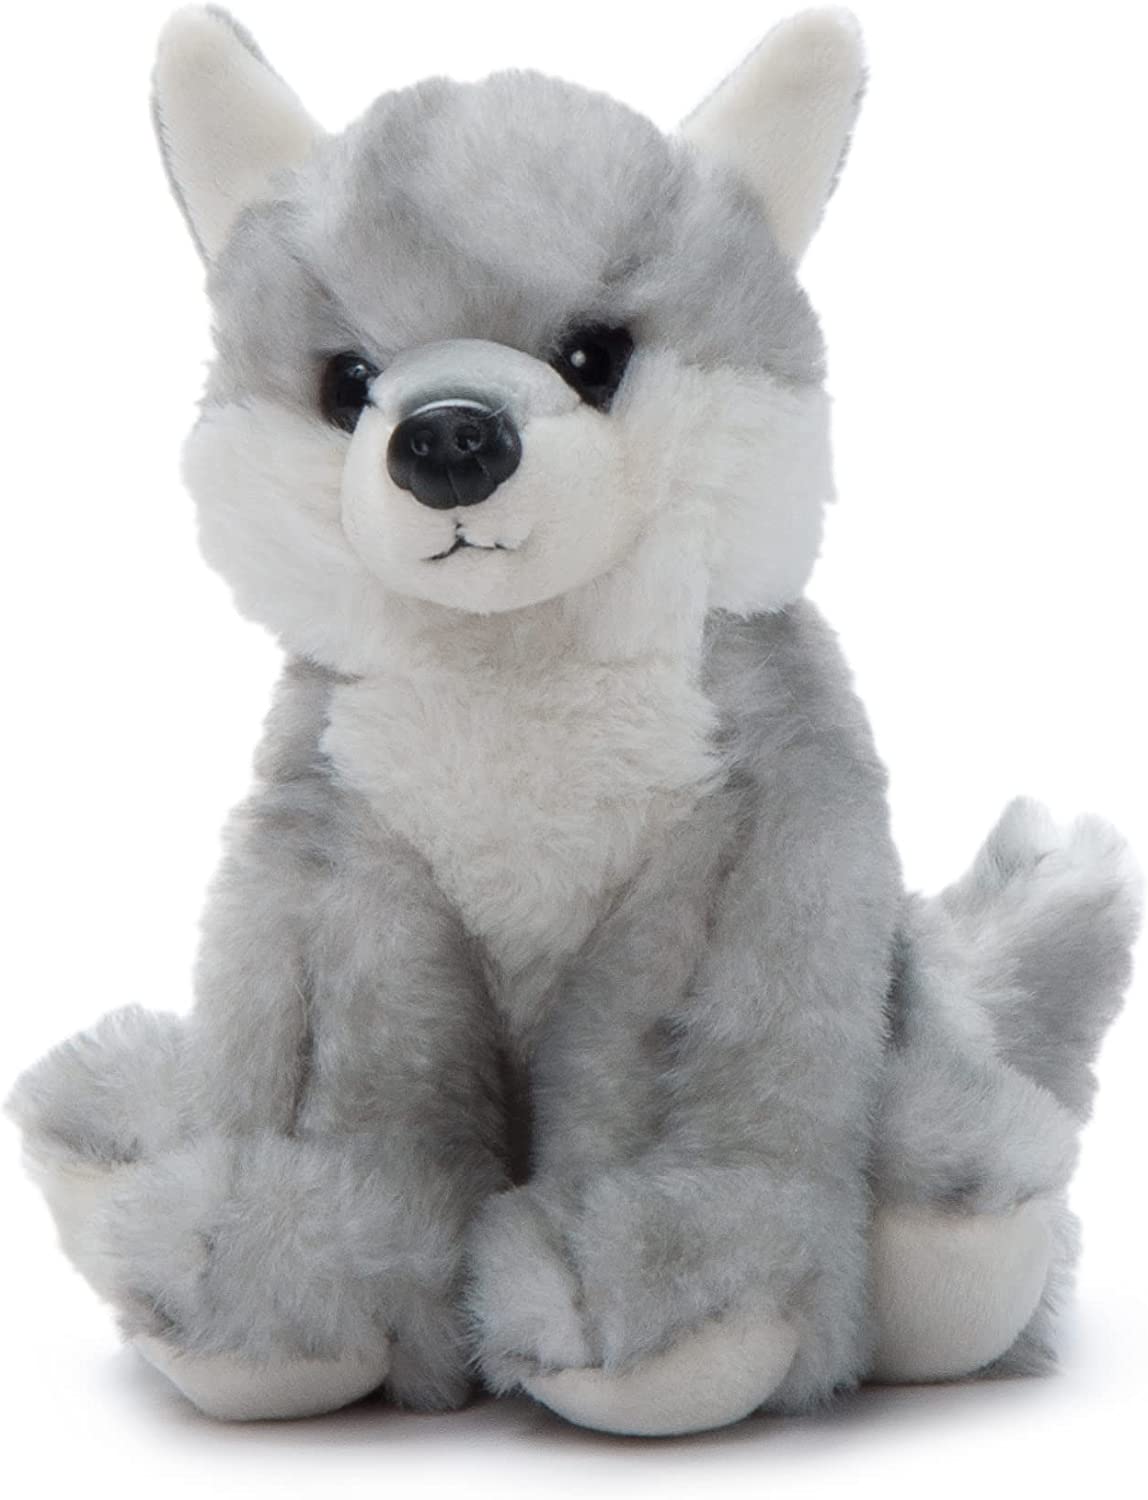 Plush: 6" (14cm) Babiez Wild Onez Grey Wolf